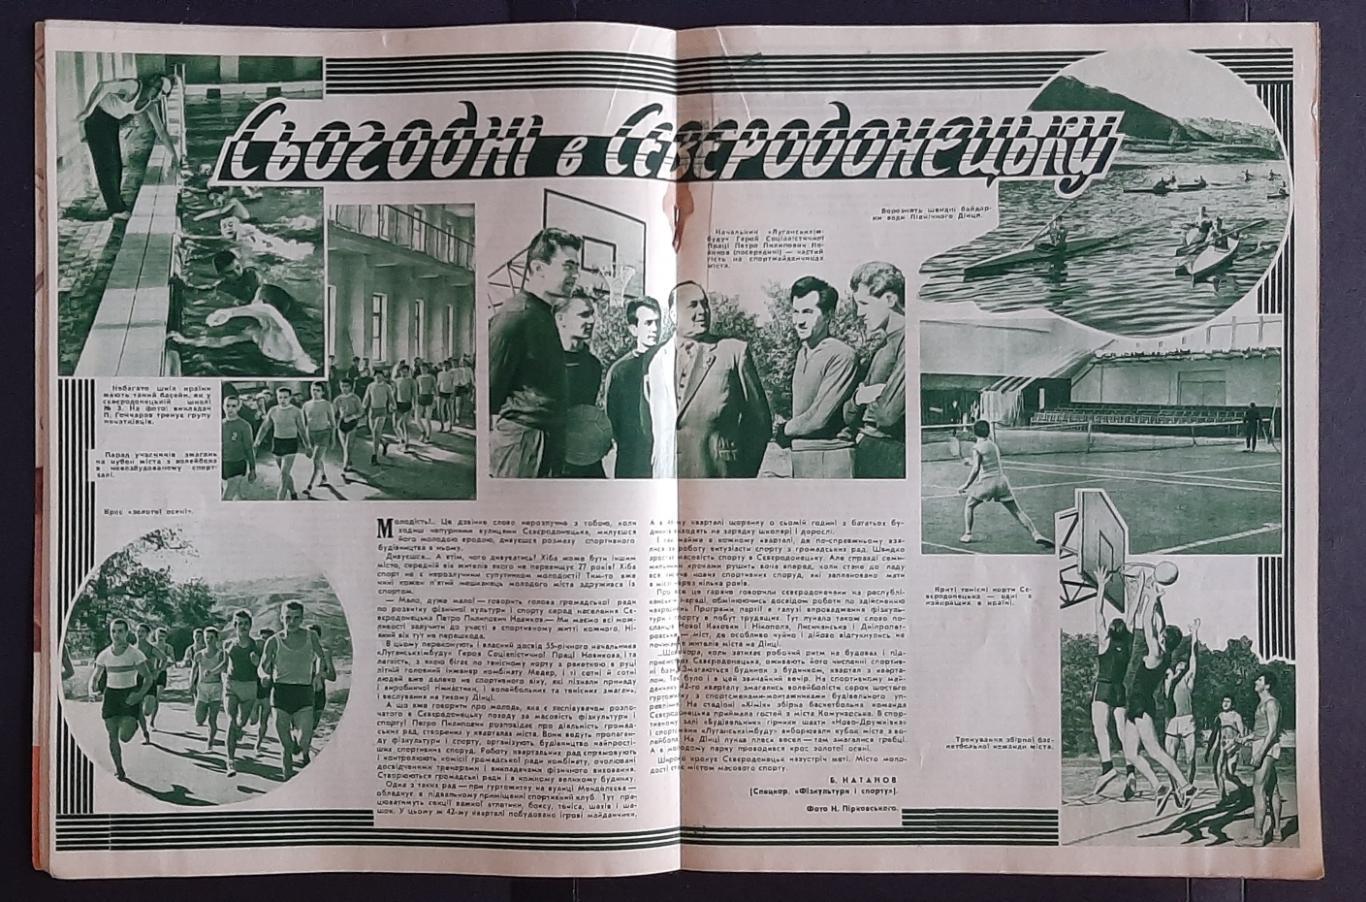 Журнал Фізкультура і спорт #11 1962 2